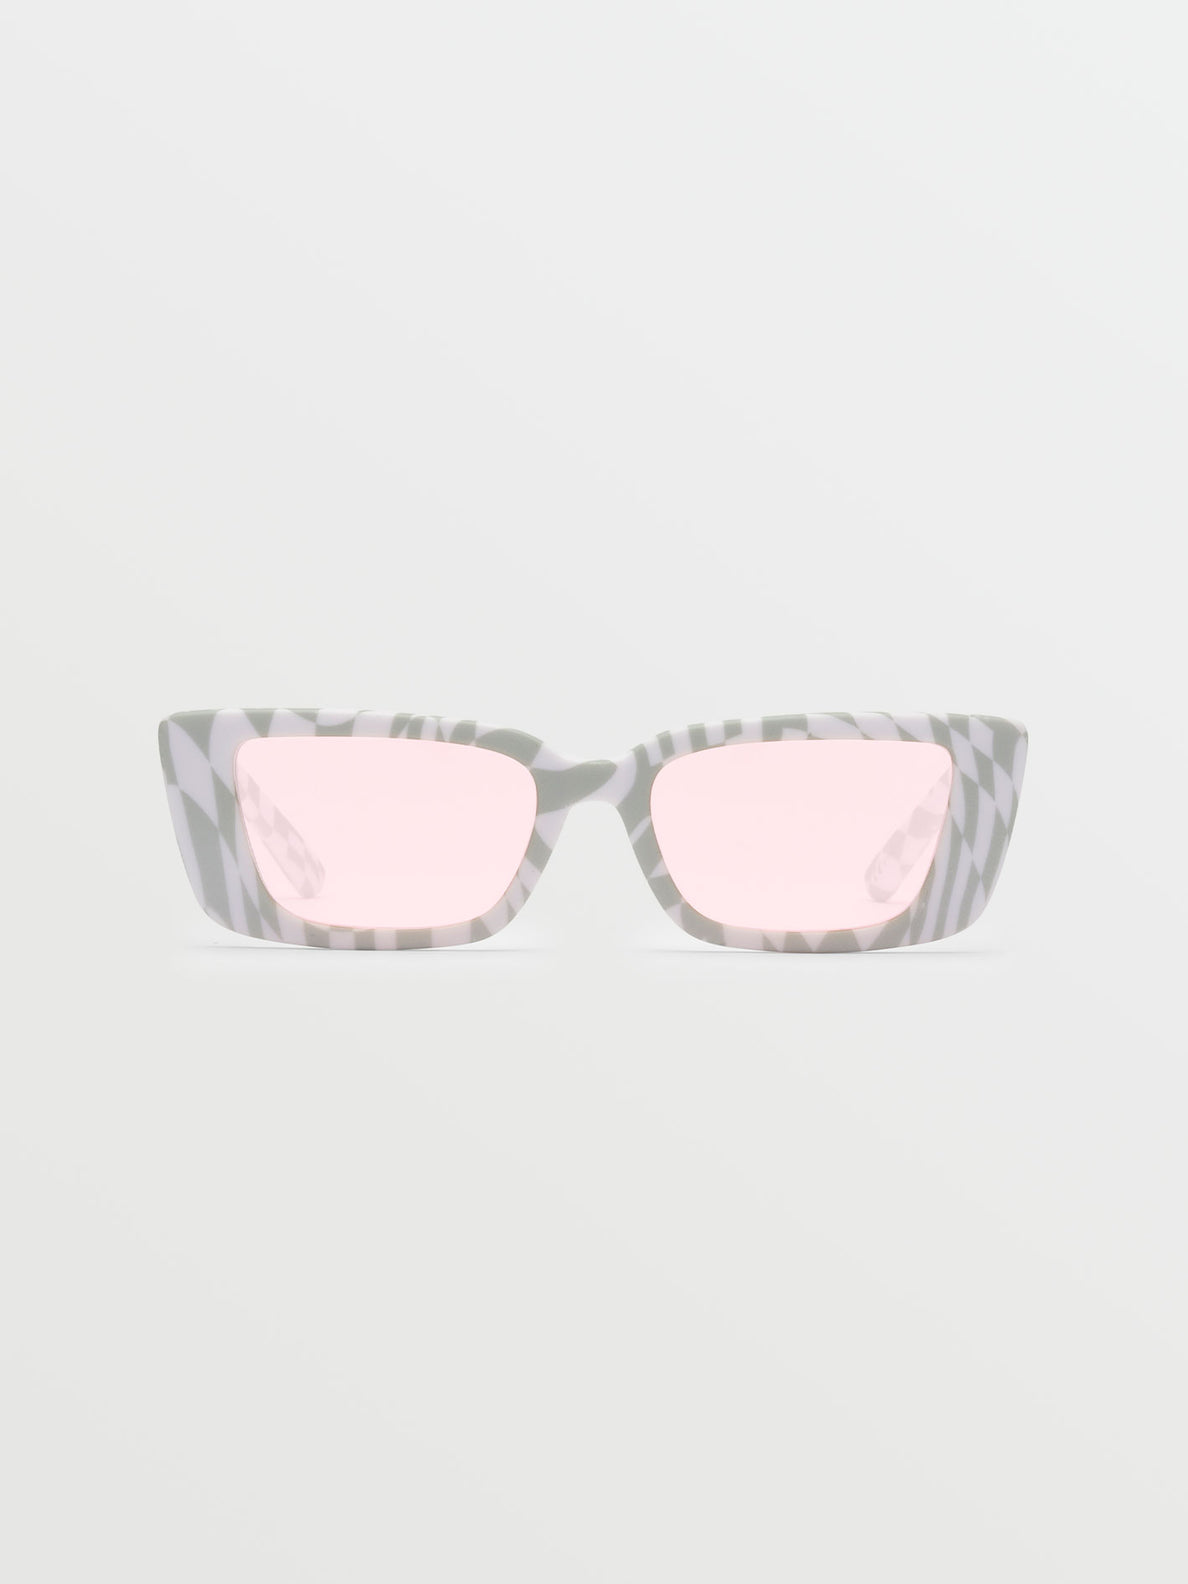 Strange Land Sunglasses - Check Her/Rose